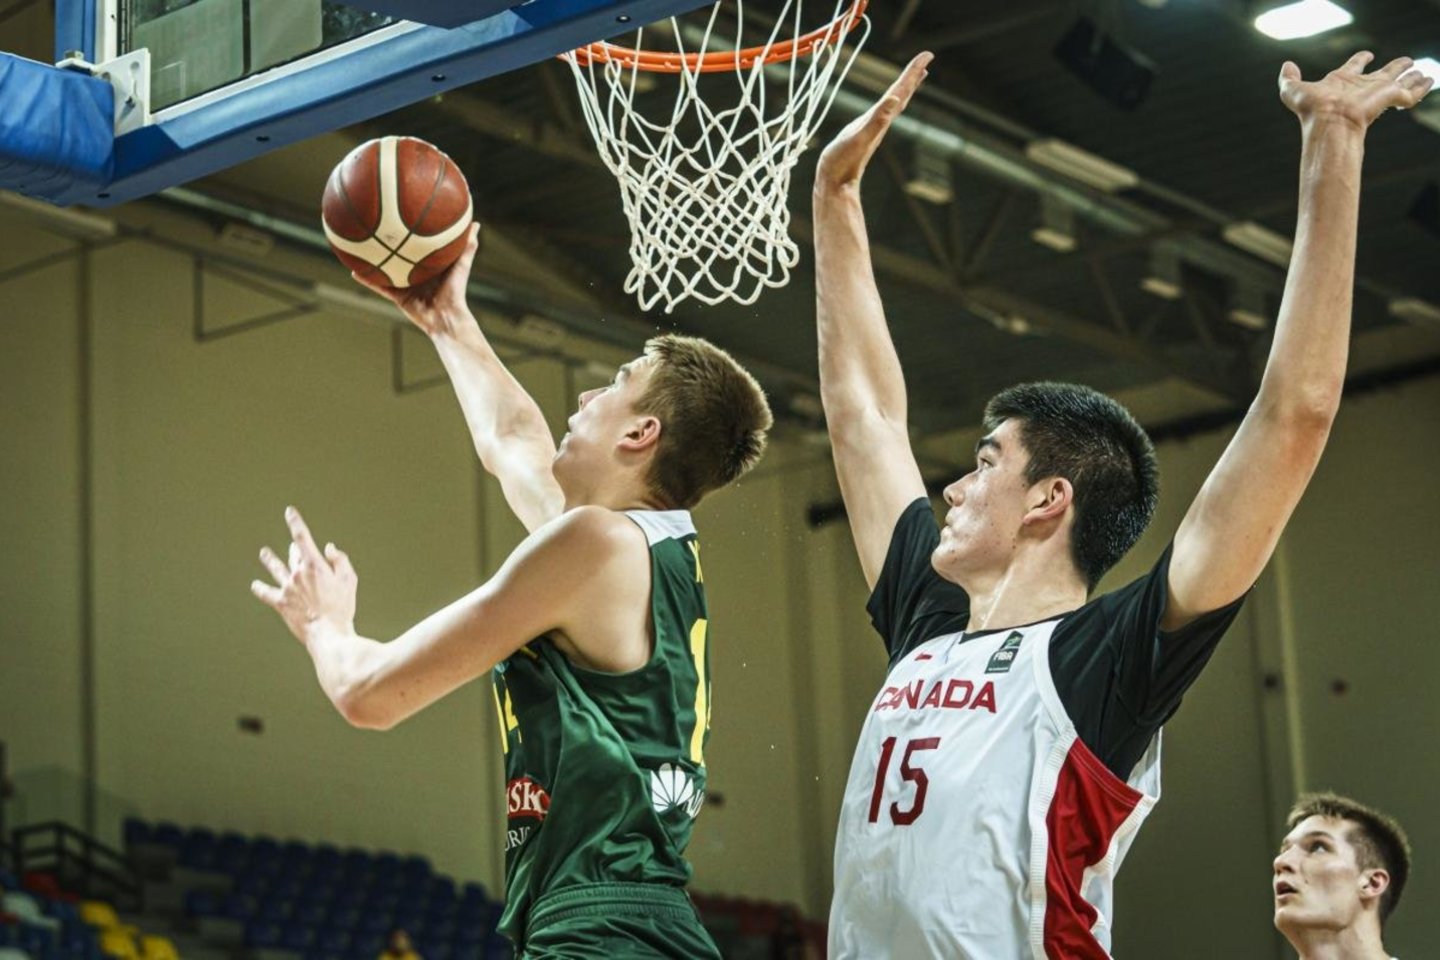  Lietuvos 19-mečiai pralaimėjo kanadiečiams.<br> FIBA nuotr.